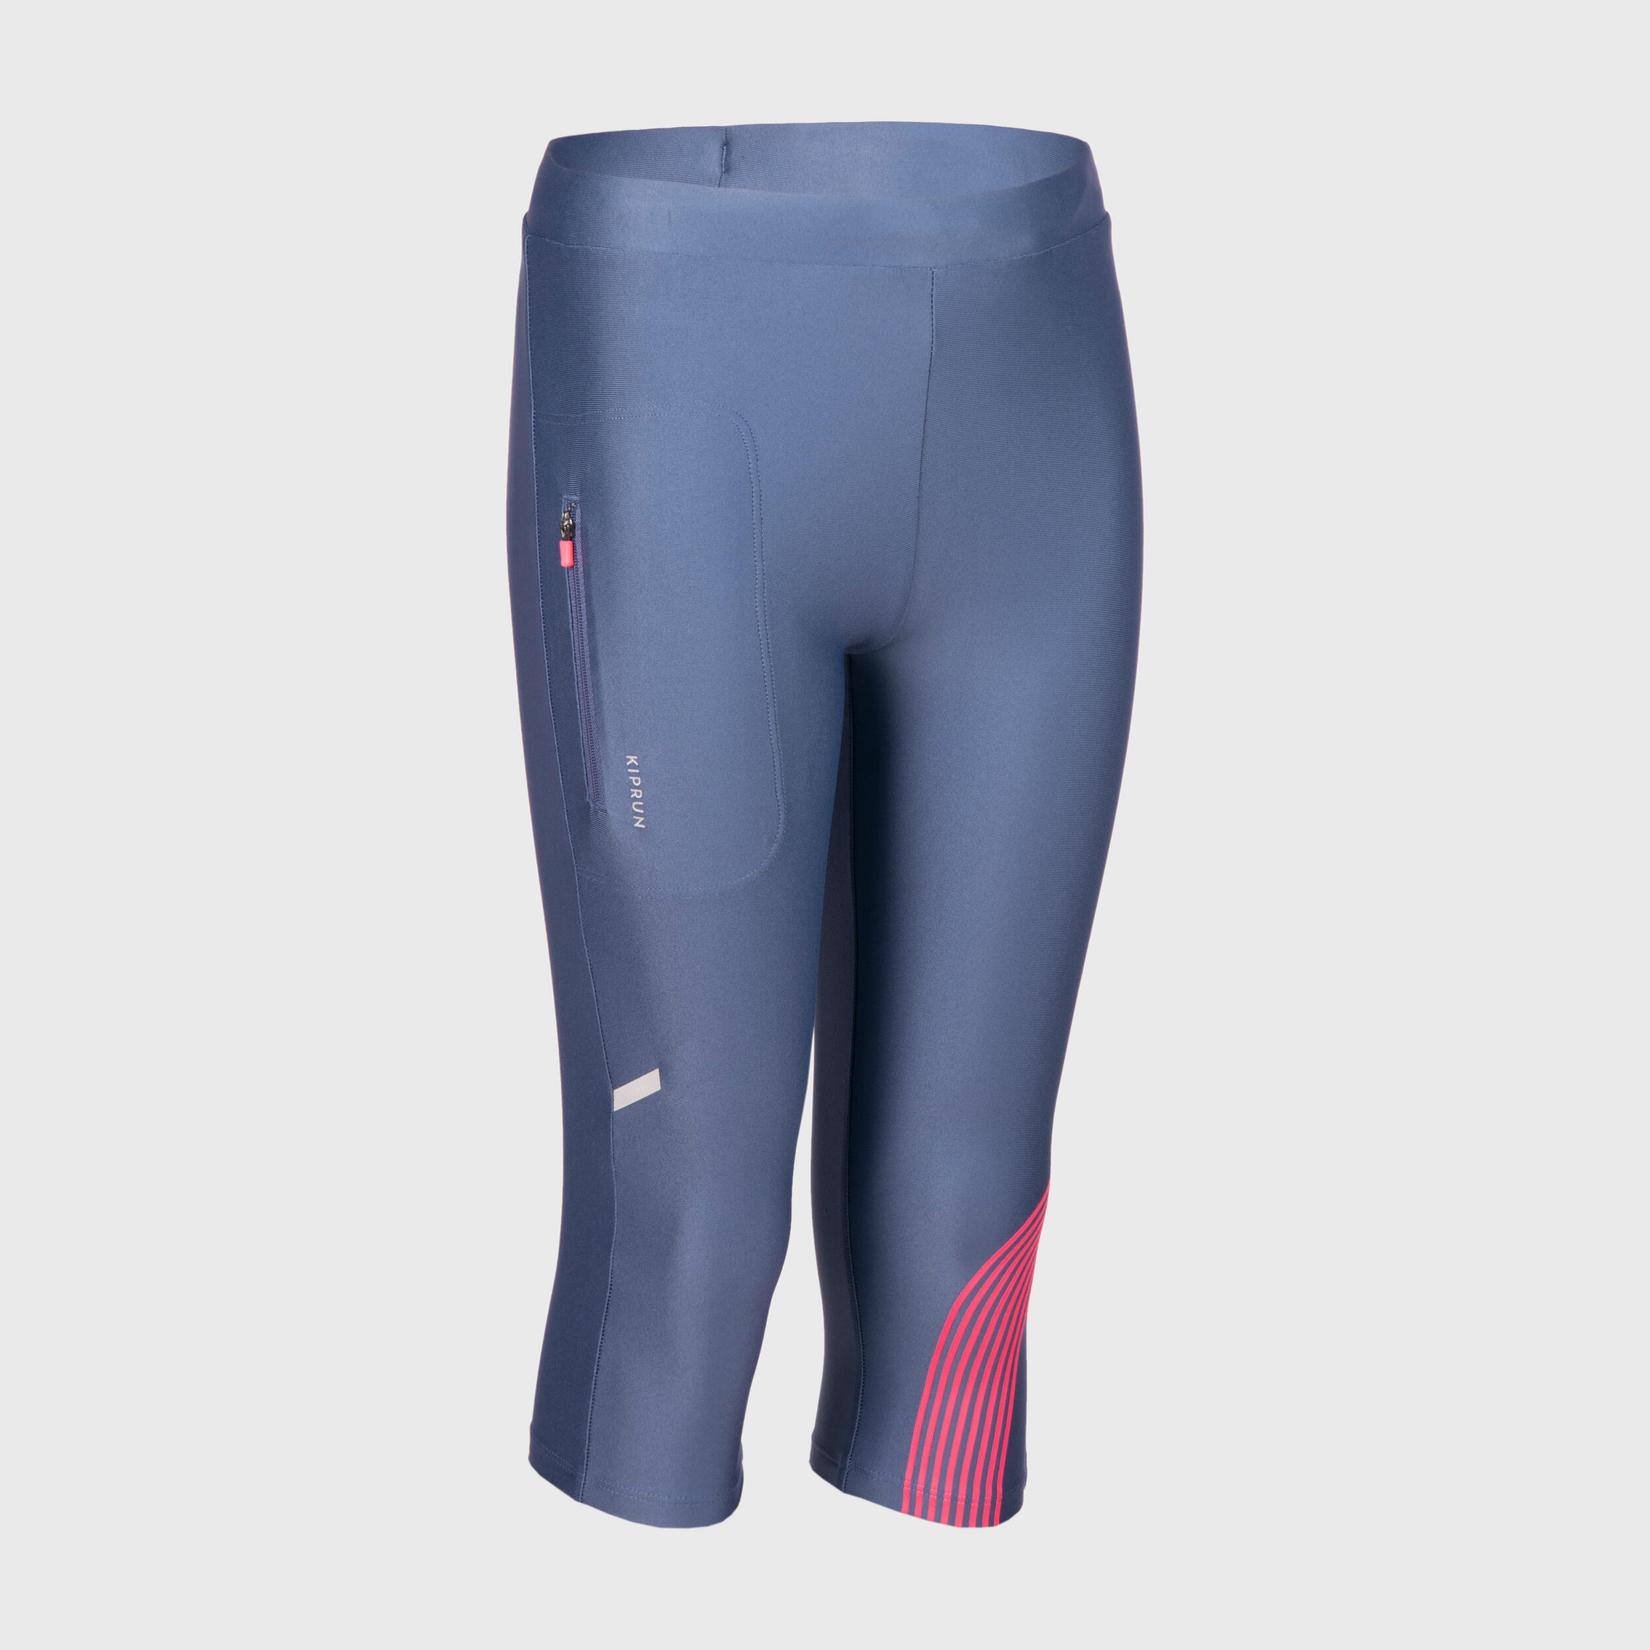 Προσφορά Kids' running leggings - KIPRUN DRY - grey pink για 9€ σε Decathlon